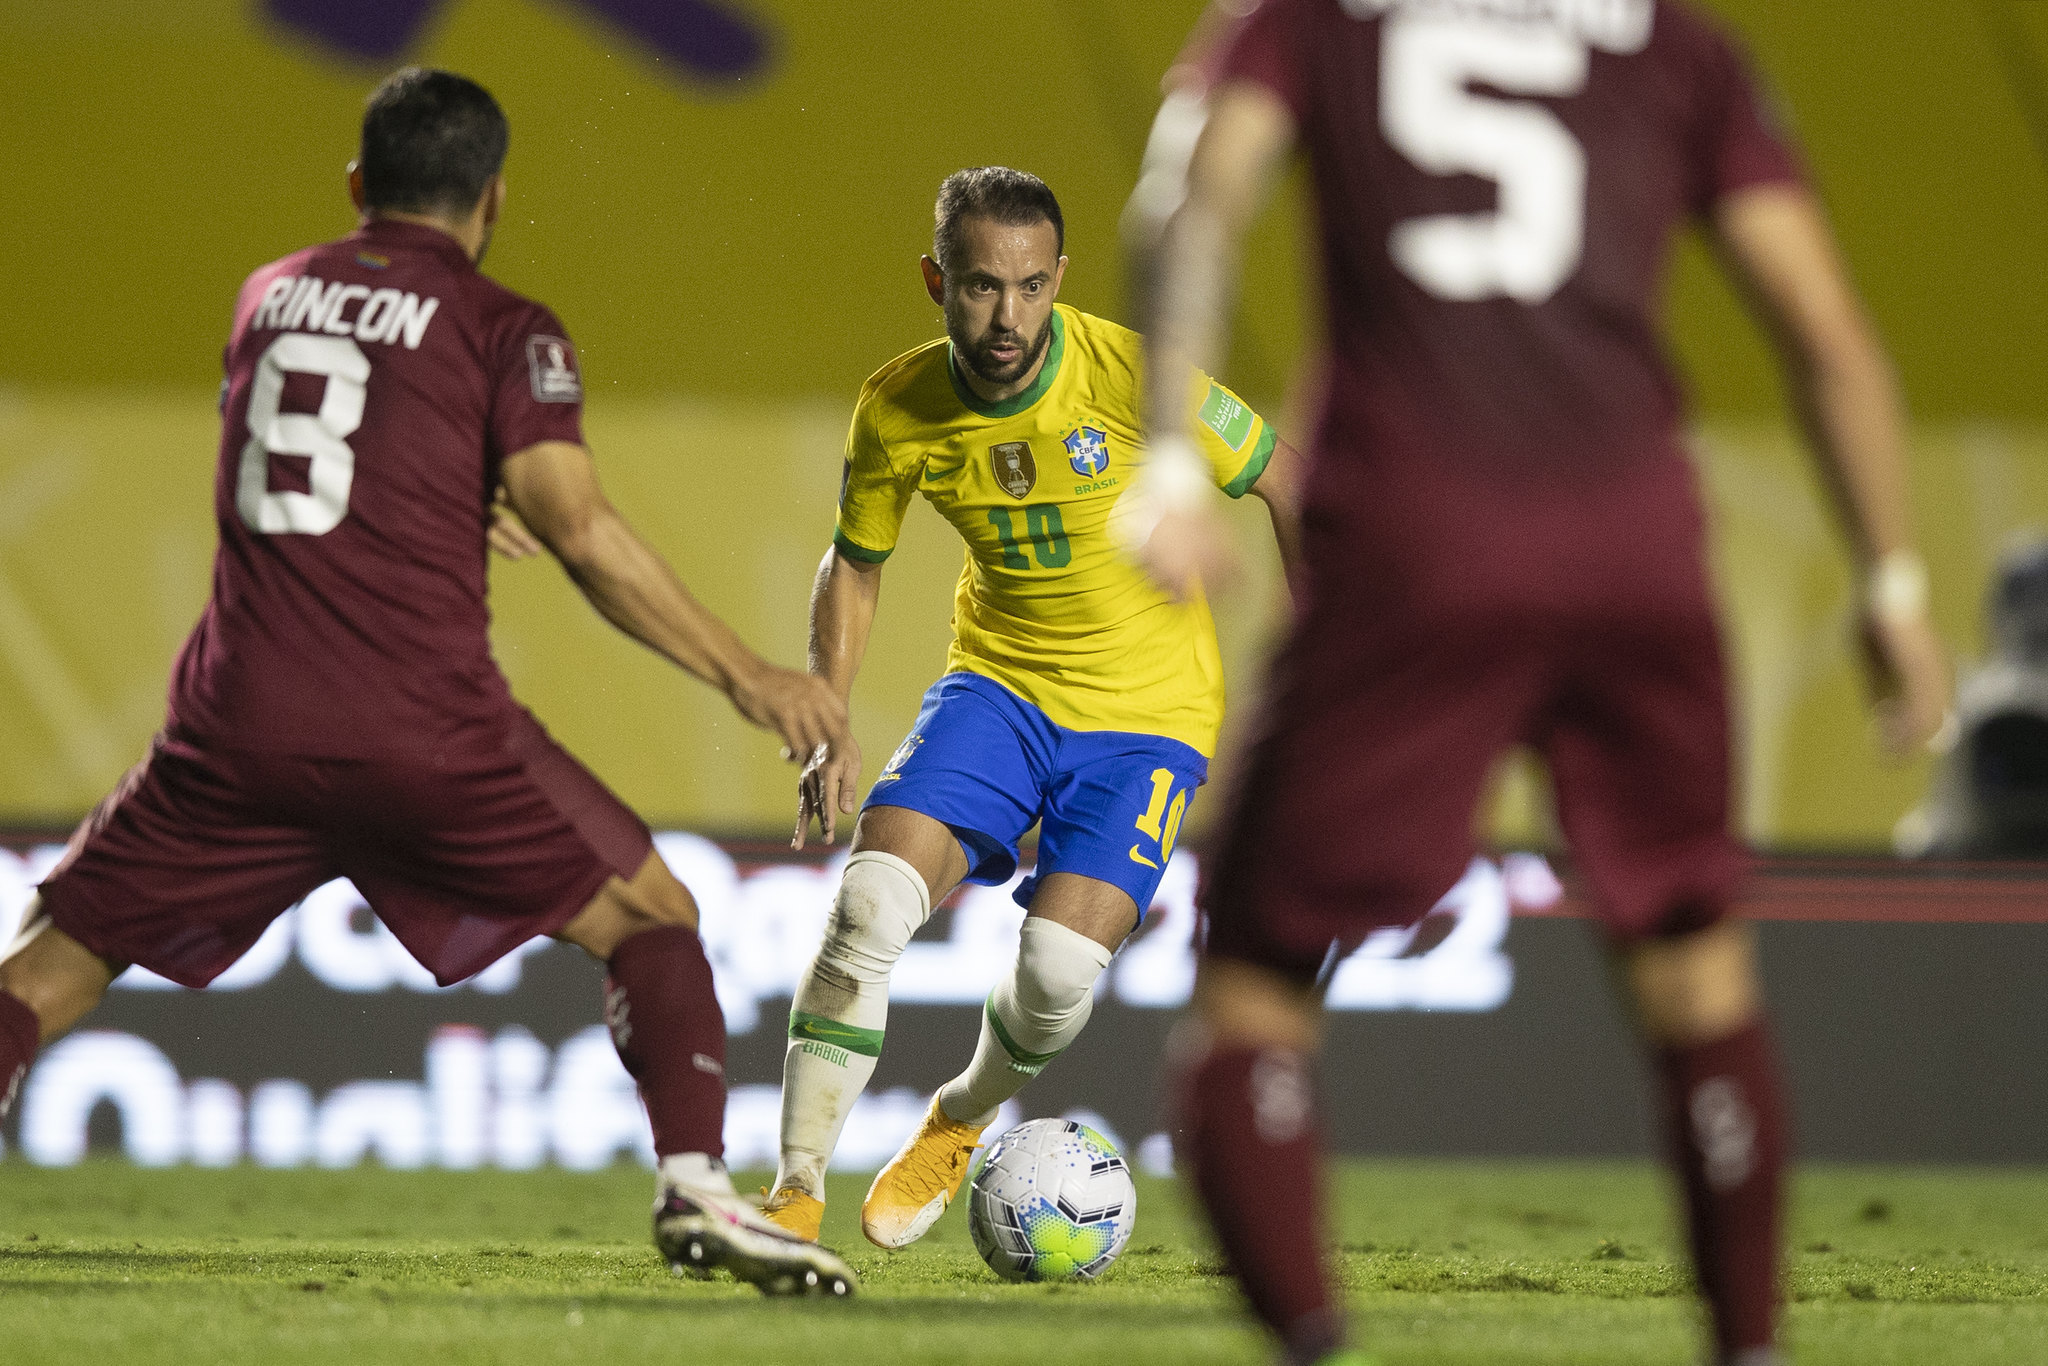 Tricolor soma mais duas goleadas na Copa Buh